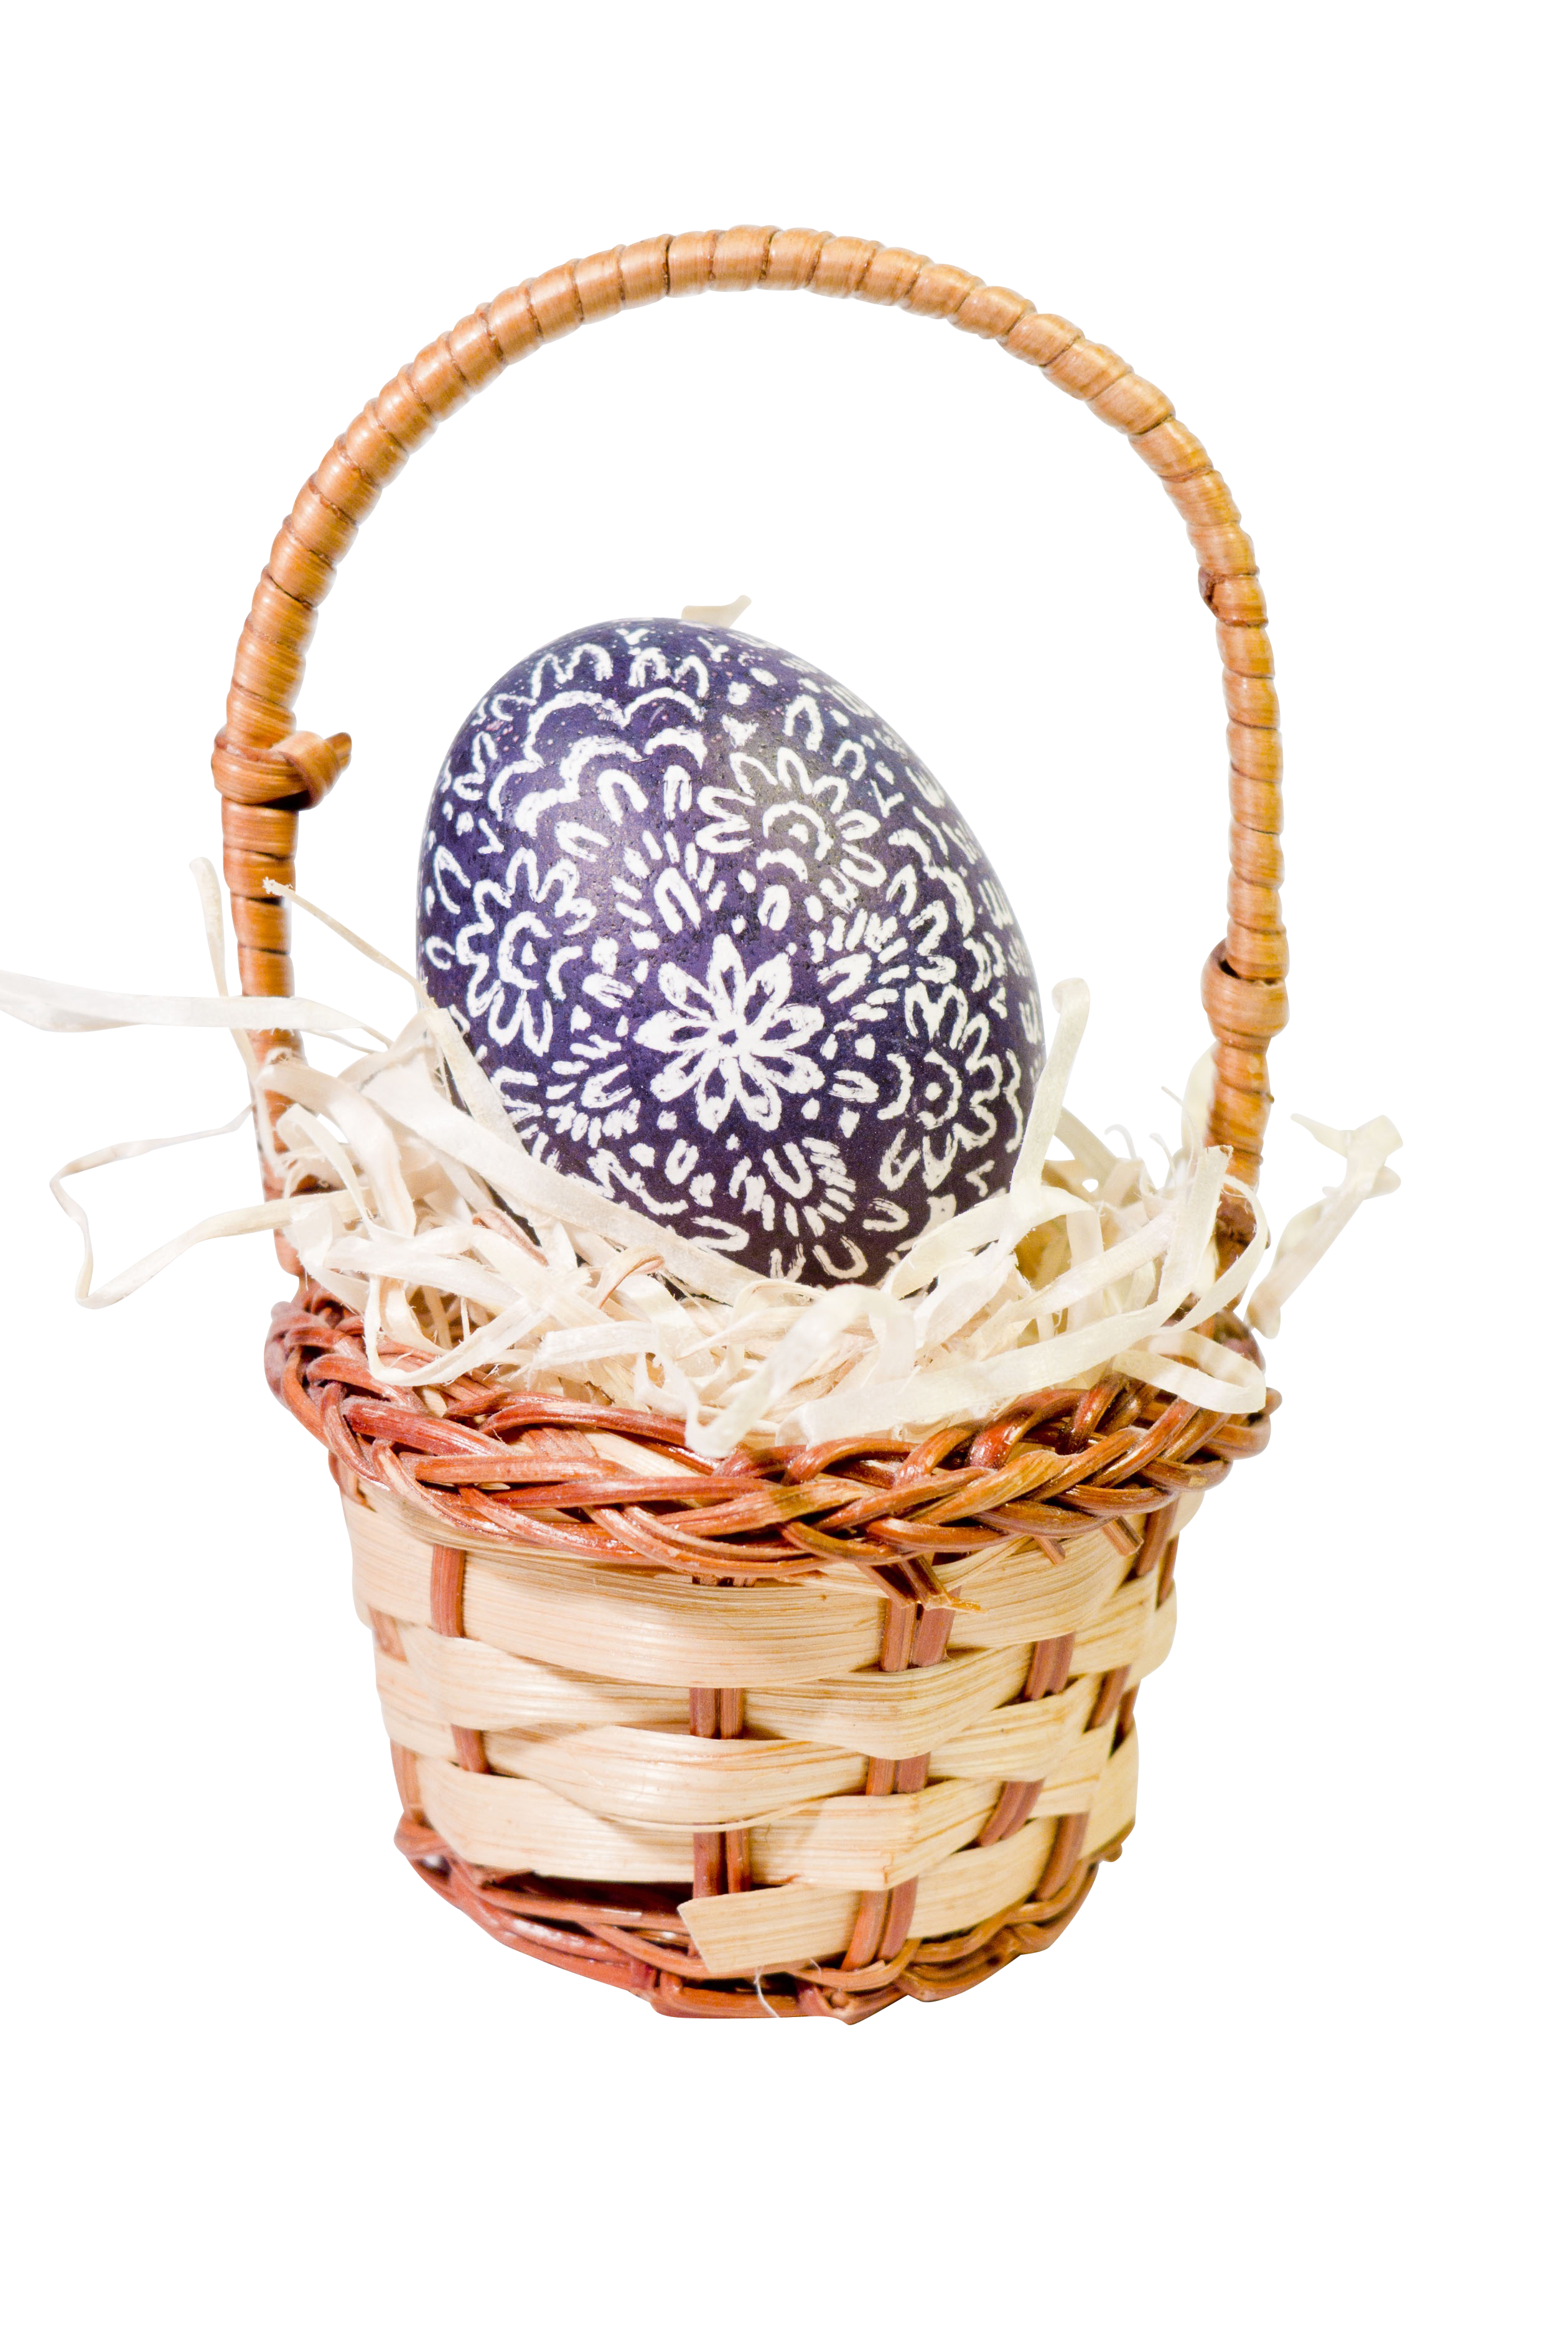 A Purple Egg In A Basket